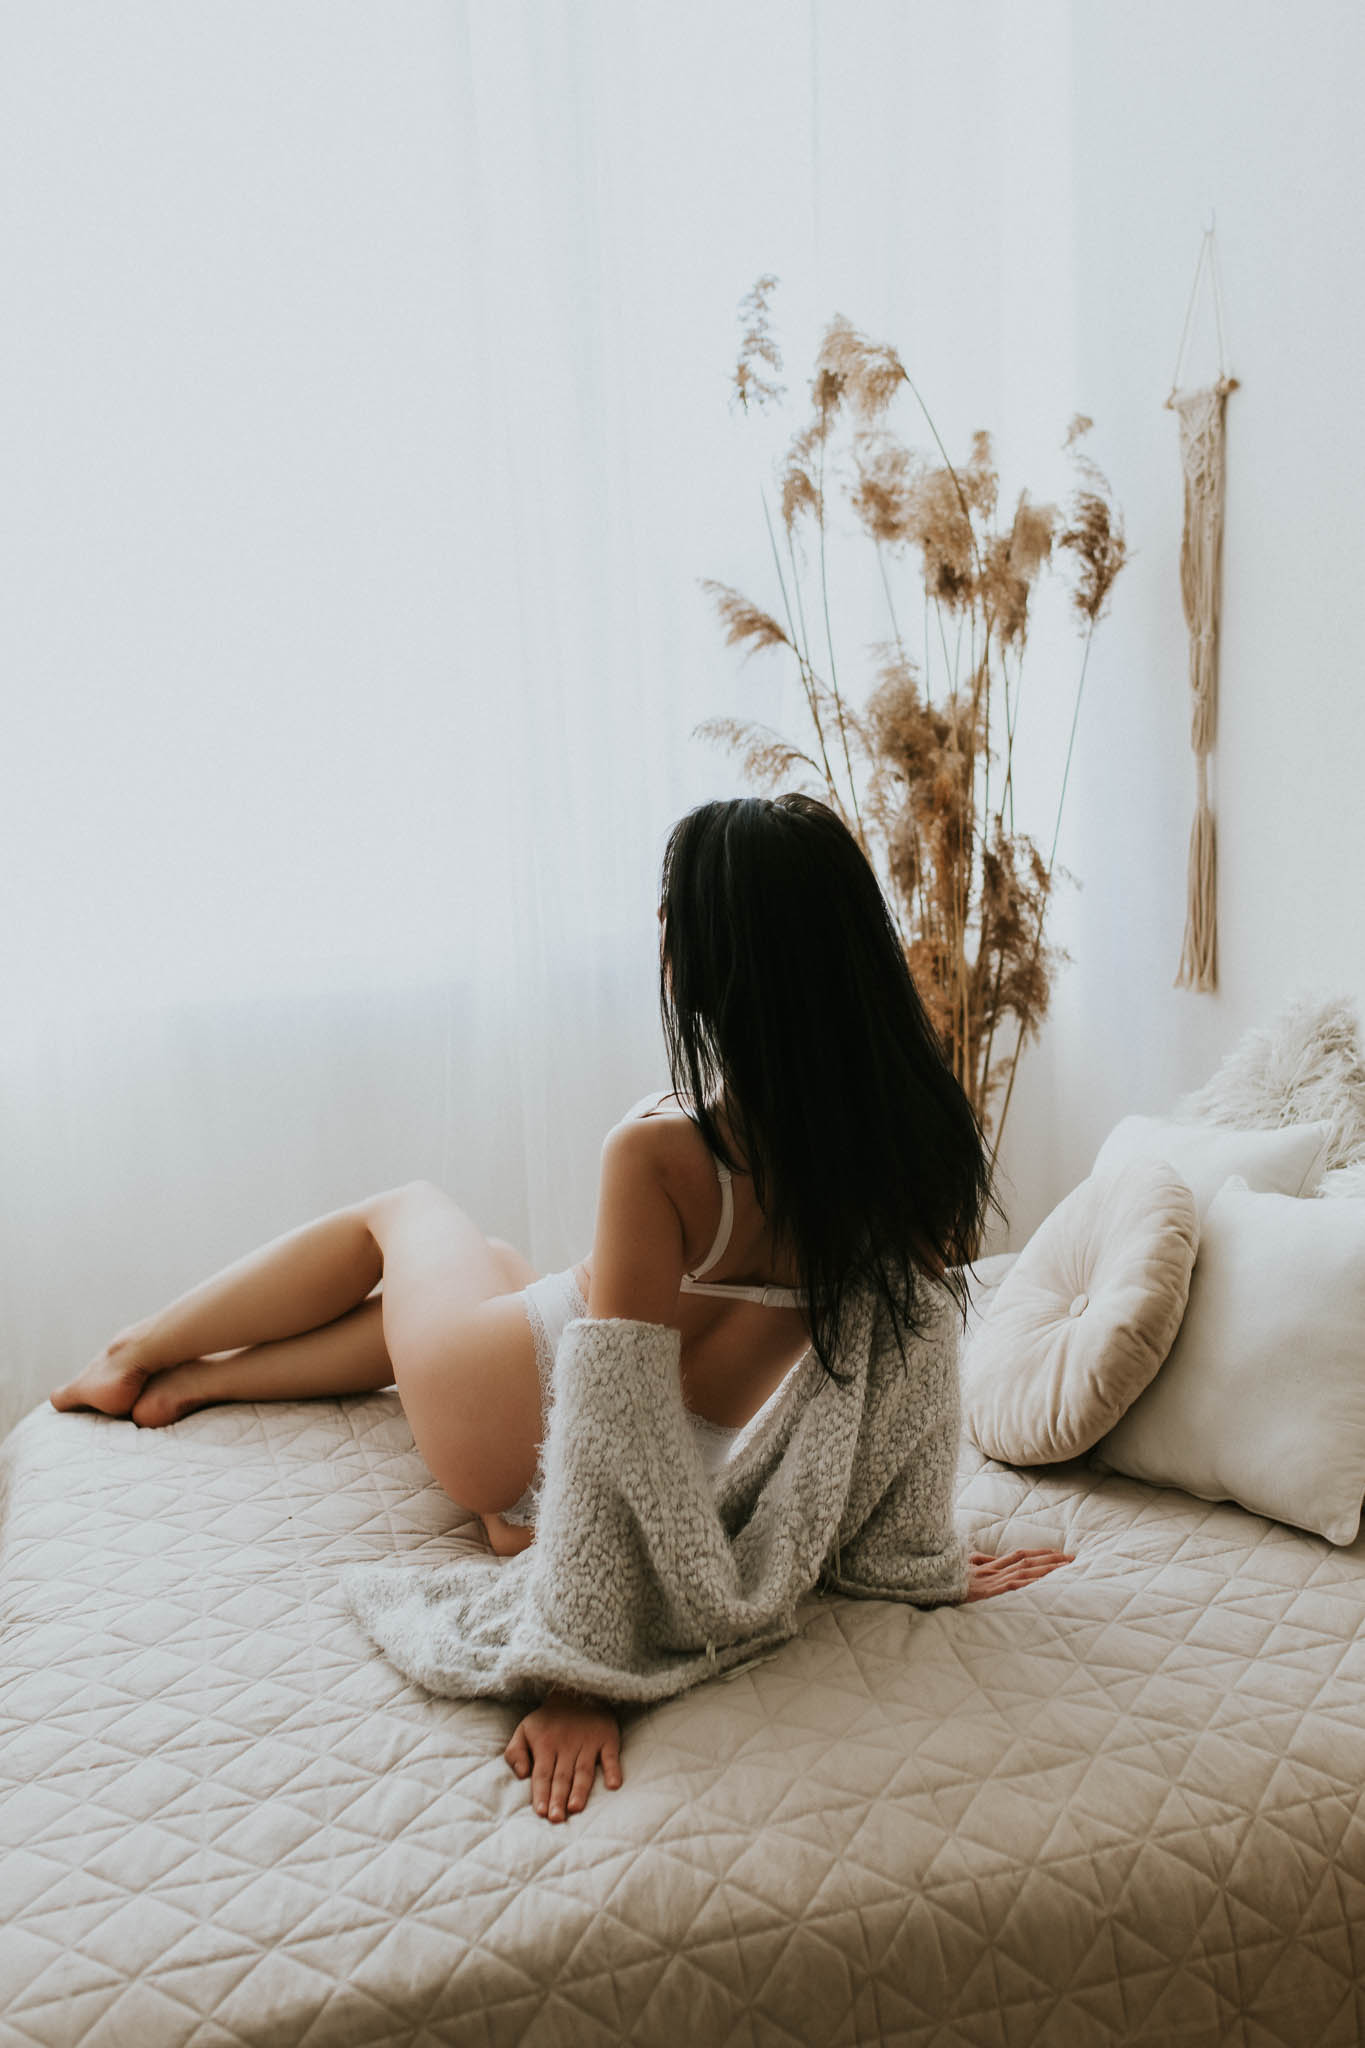 Dziewczyna siedząca na łóżku w bieliźnie i swetrze, który opada z ramion. Warsztaty sesji kobiecej